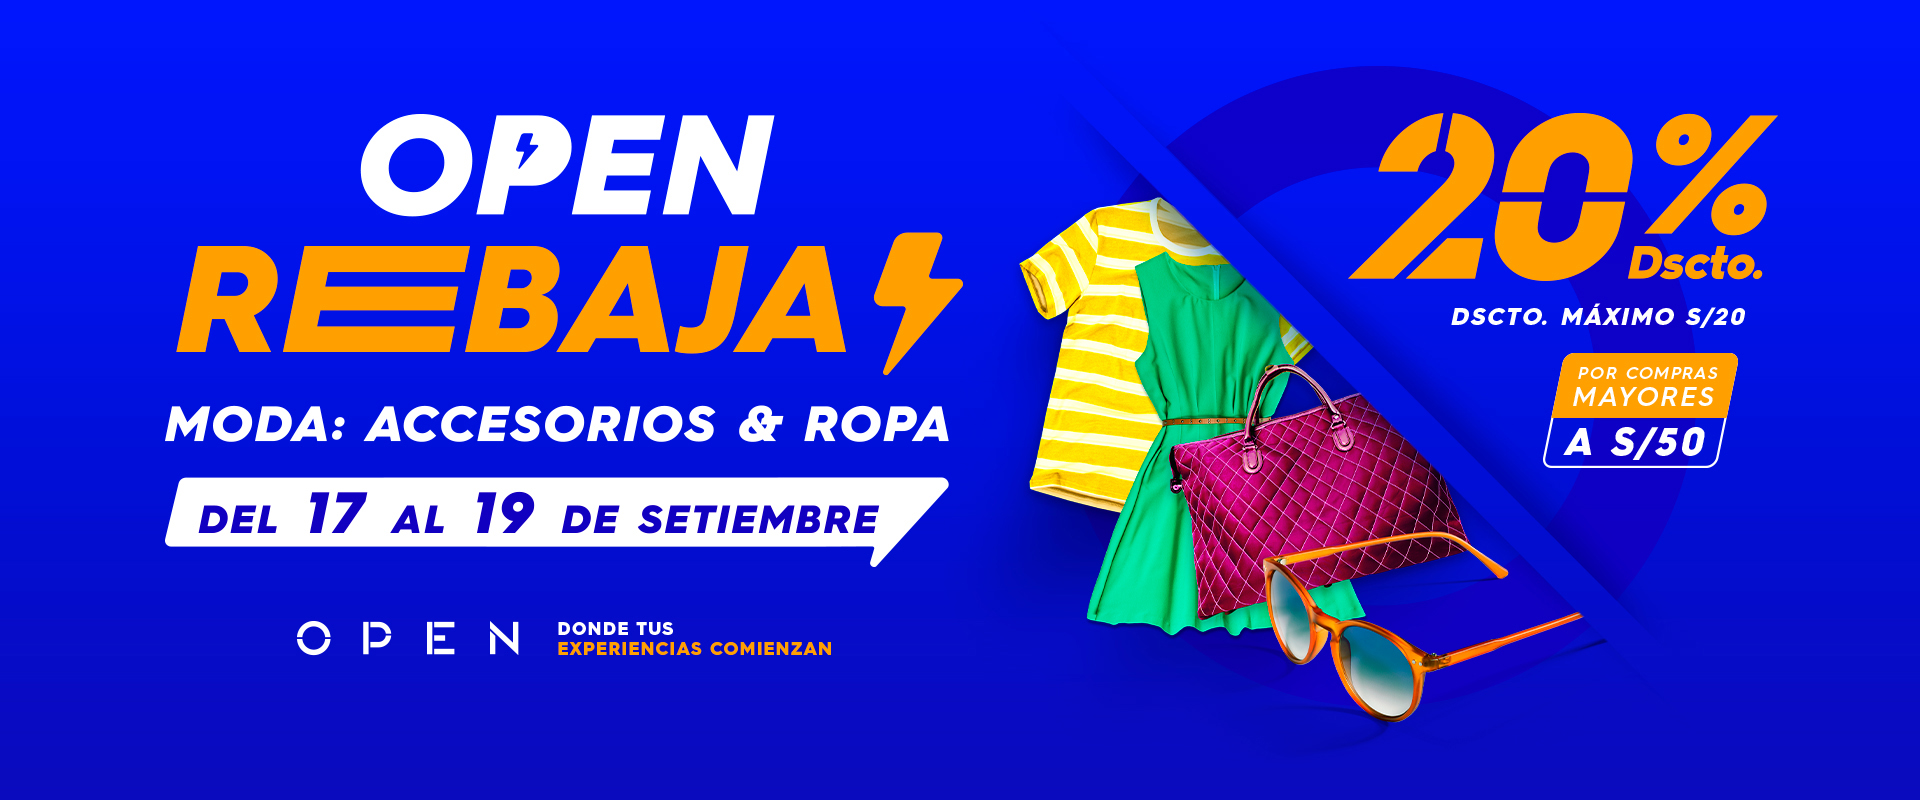 Open Rebajas: Moda & Accesorios